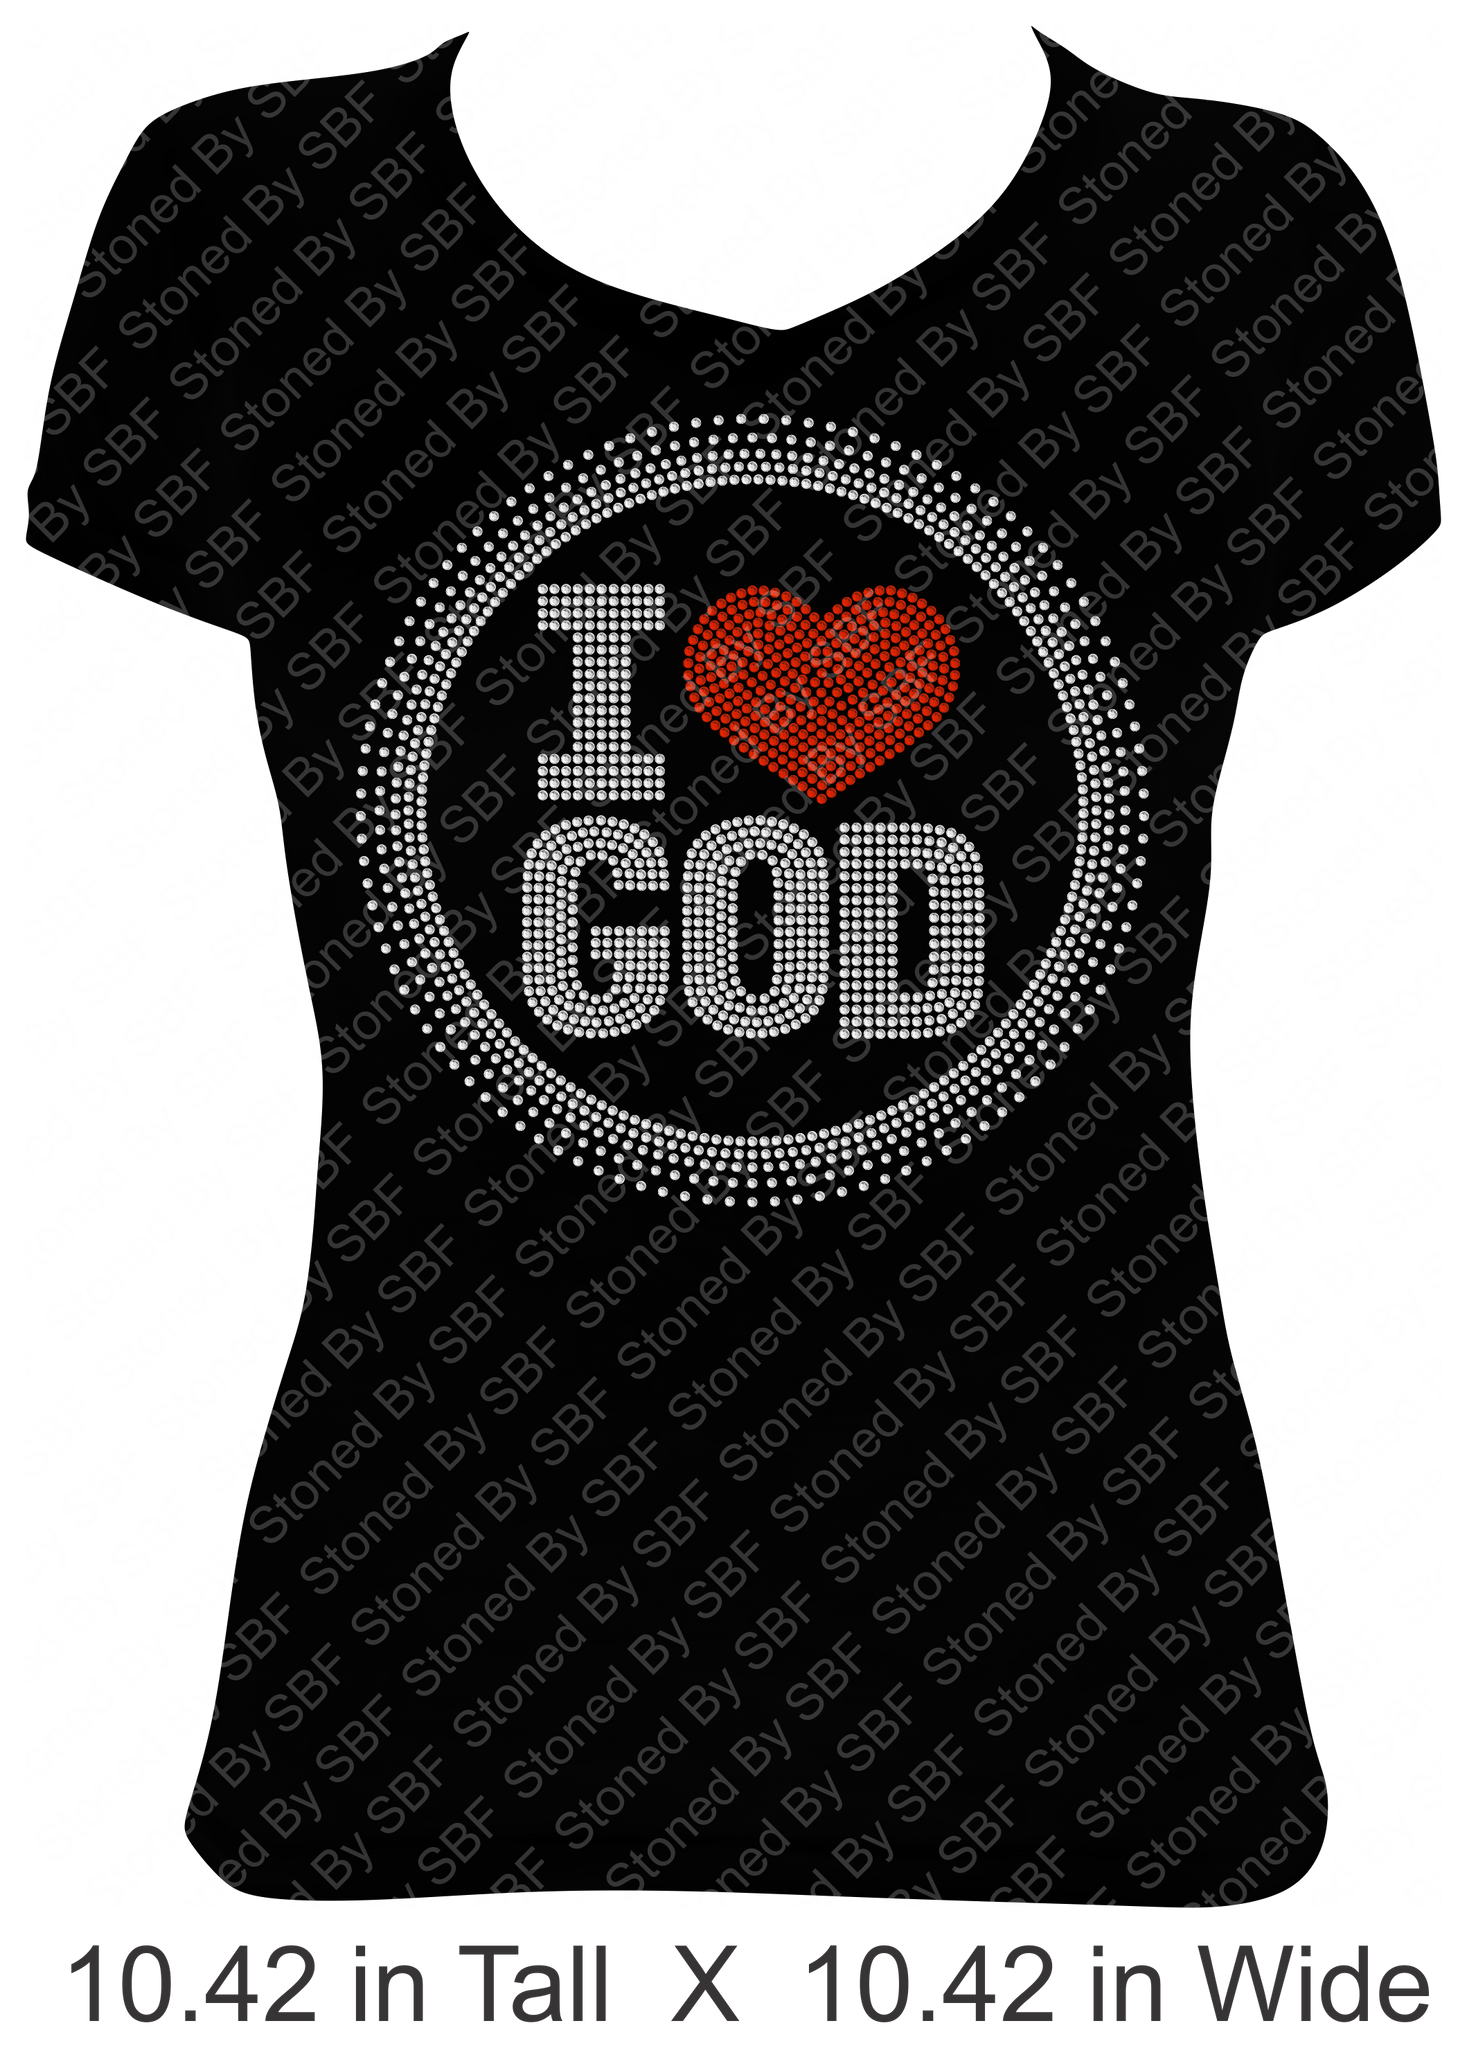 I Love God (with heart)